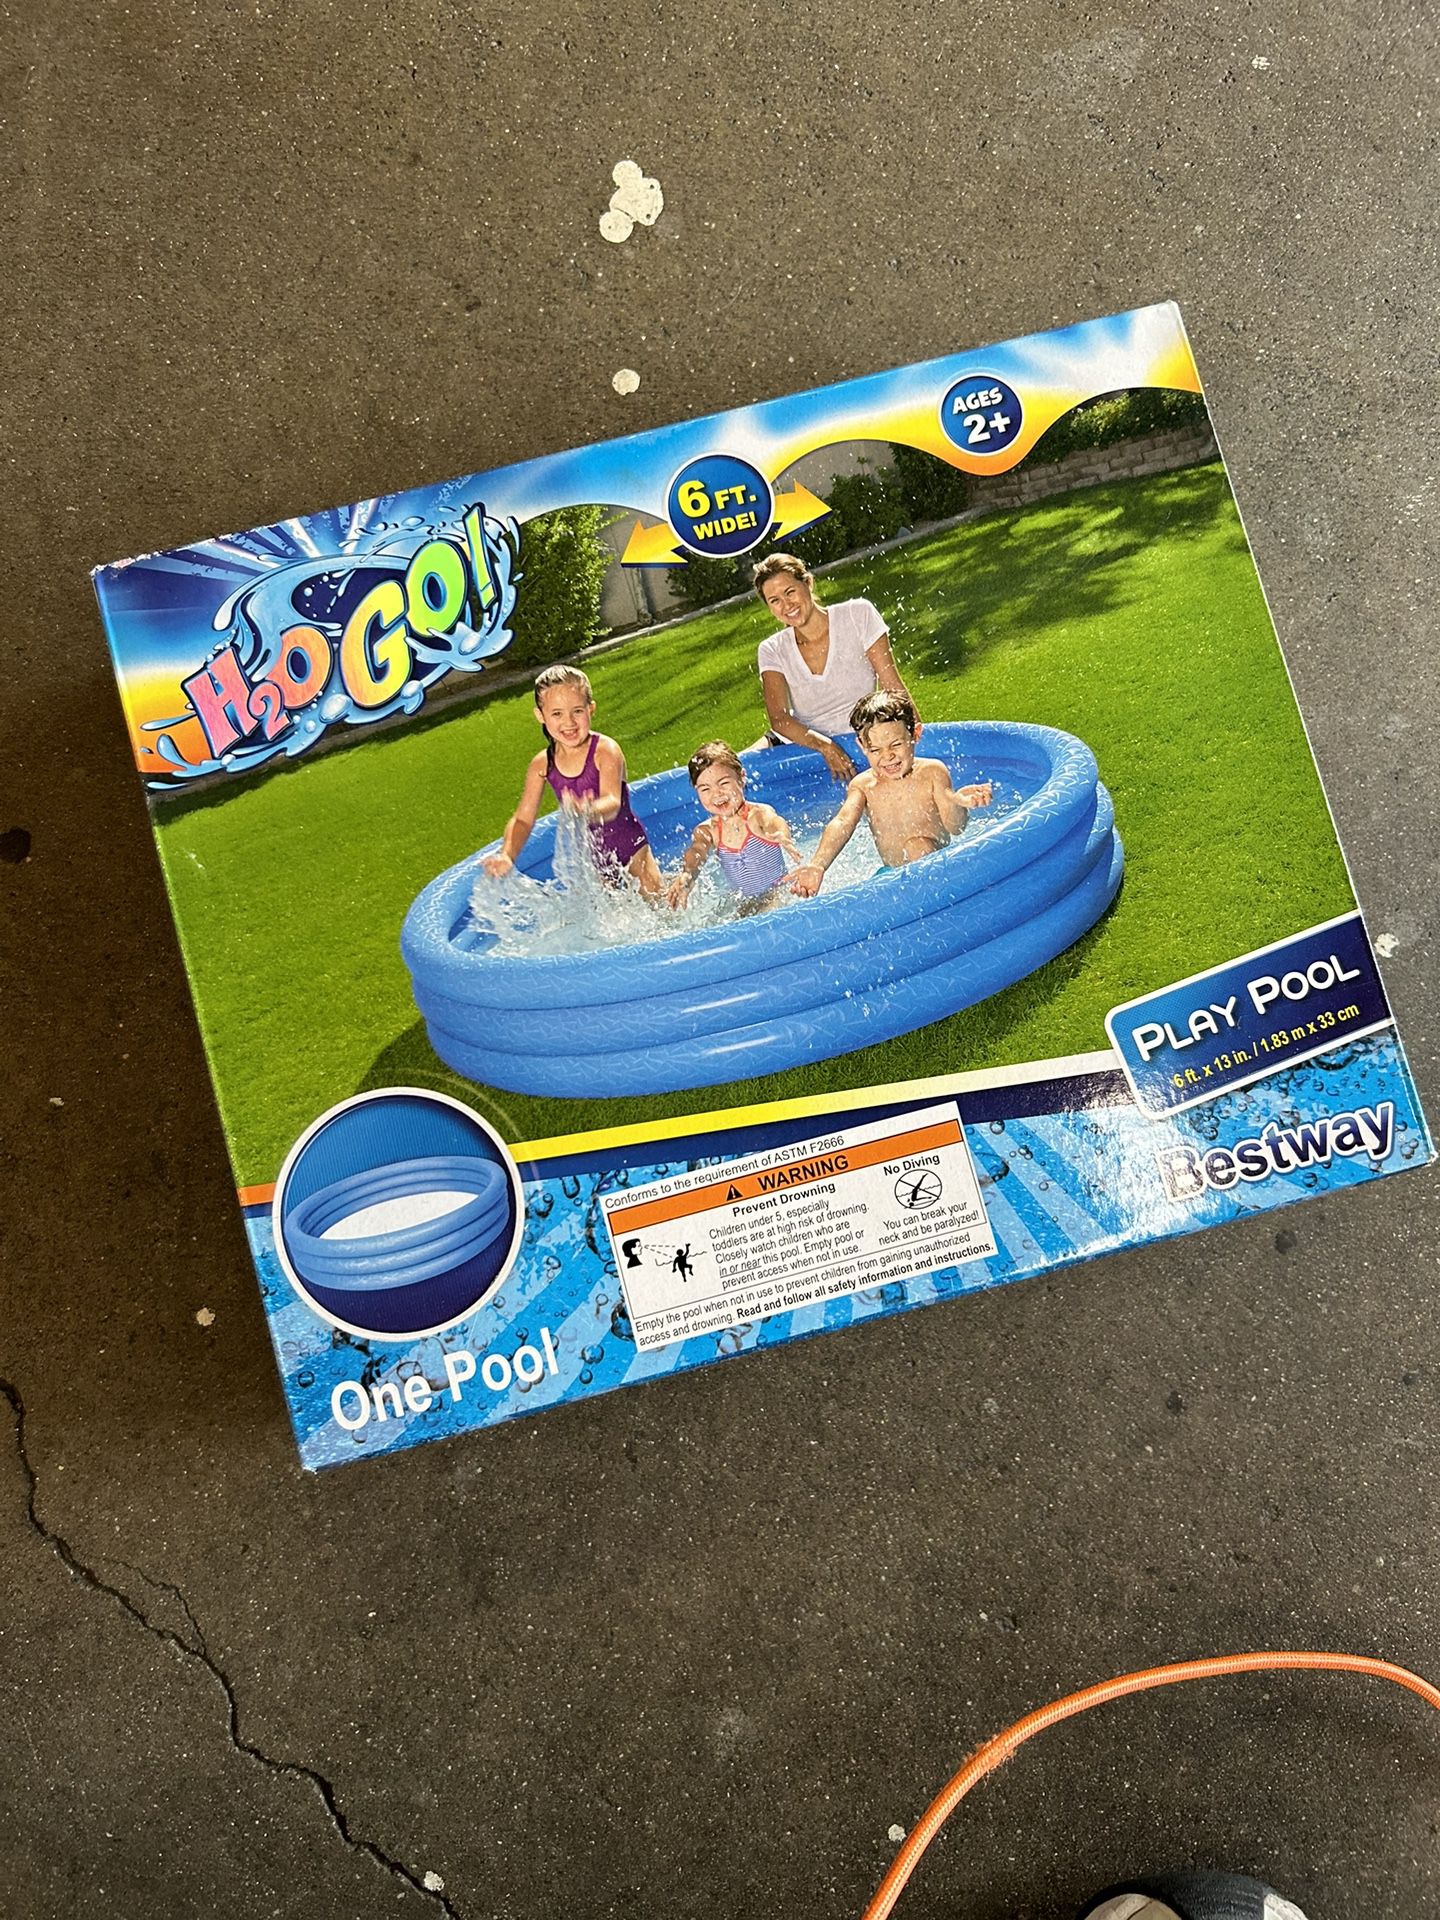 H2O go bestway playpool